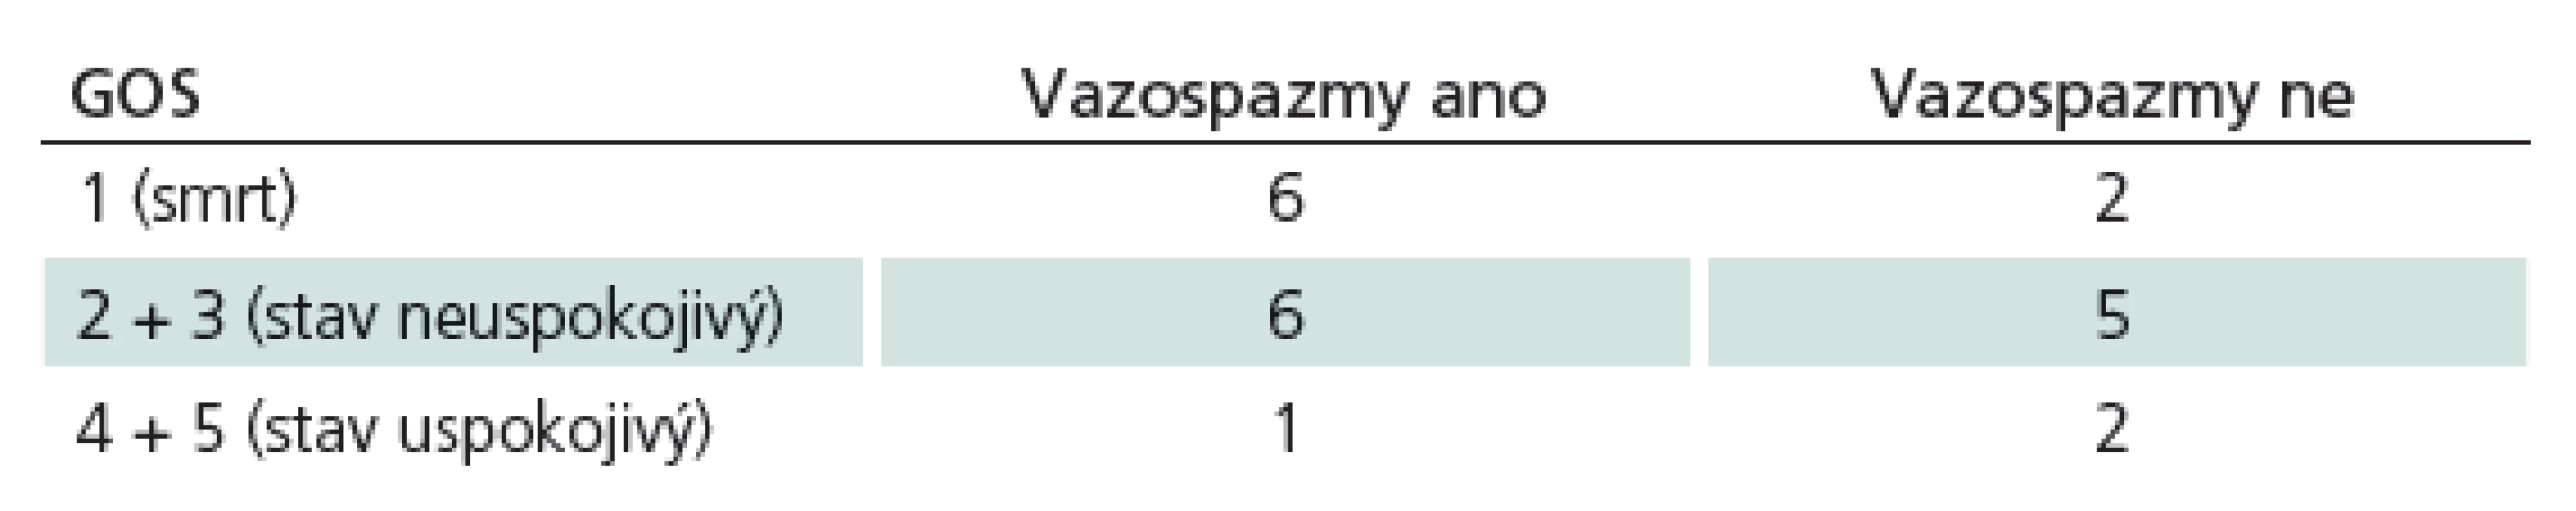 Parametry GOS v souvislosti s přítomností vazospazmů. Je patrná tendence k vyššímu výskytu vazospazmů u pacientů s horším výsledným stavem, avšak k validnímu statistickému zpracování dat není dostatečný počet pacientů.